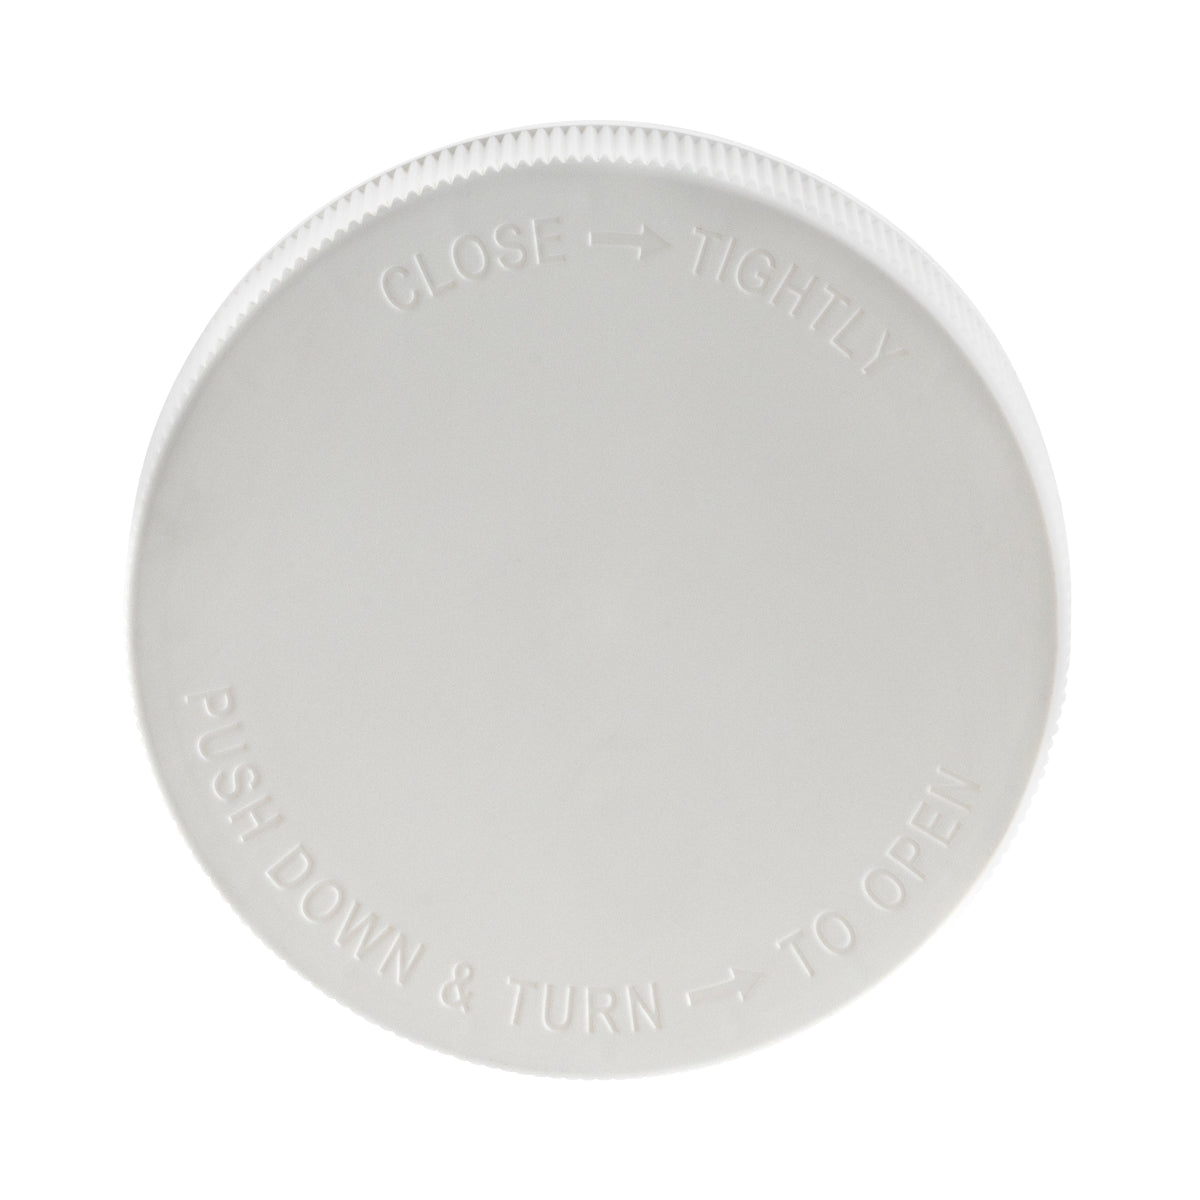 Plastic Cap | Plastic Cap | 89mm - Gloss White Cap Biohazard Inc   